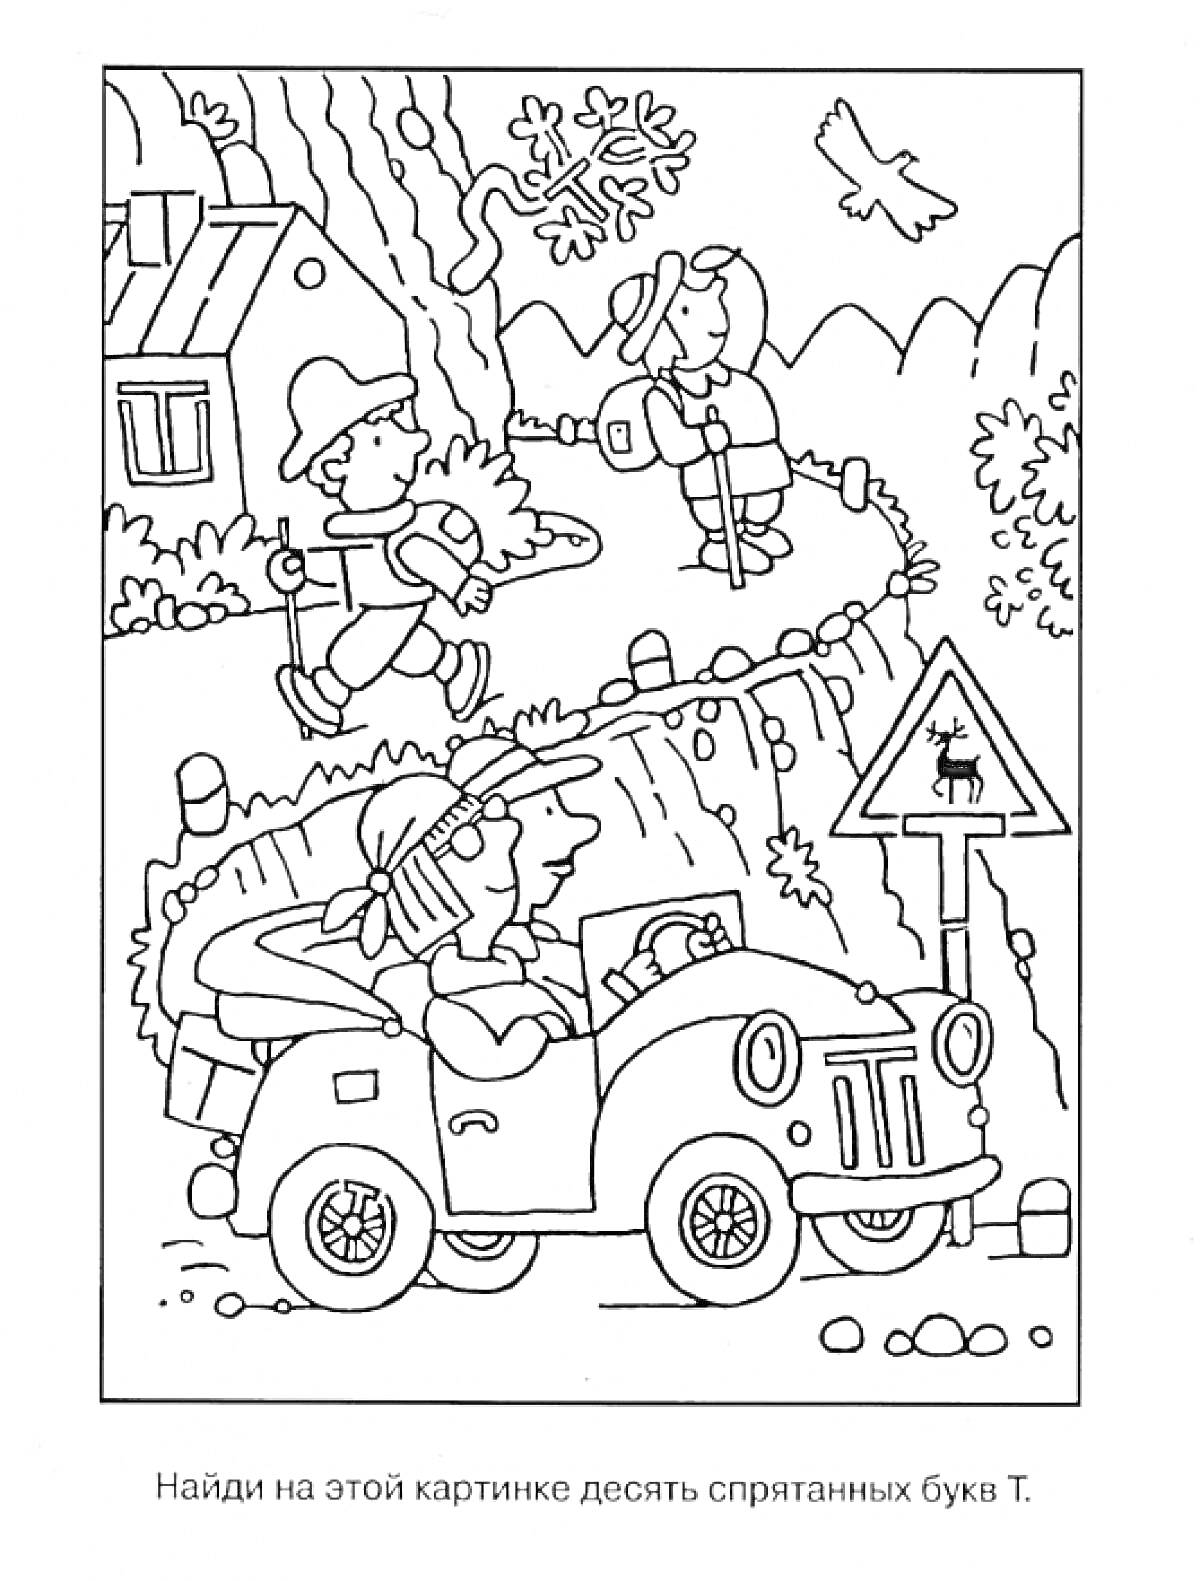 Гуляющие дети и водитель автомобиля в лесной местности с элементами дорожных знаков и деревьев. Найти десять спрятанных букв 